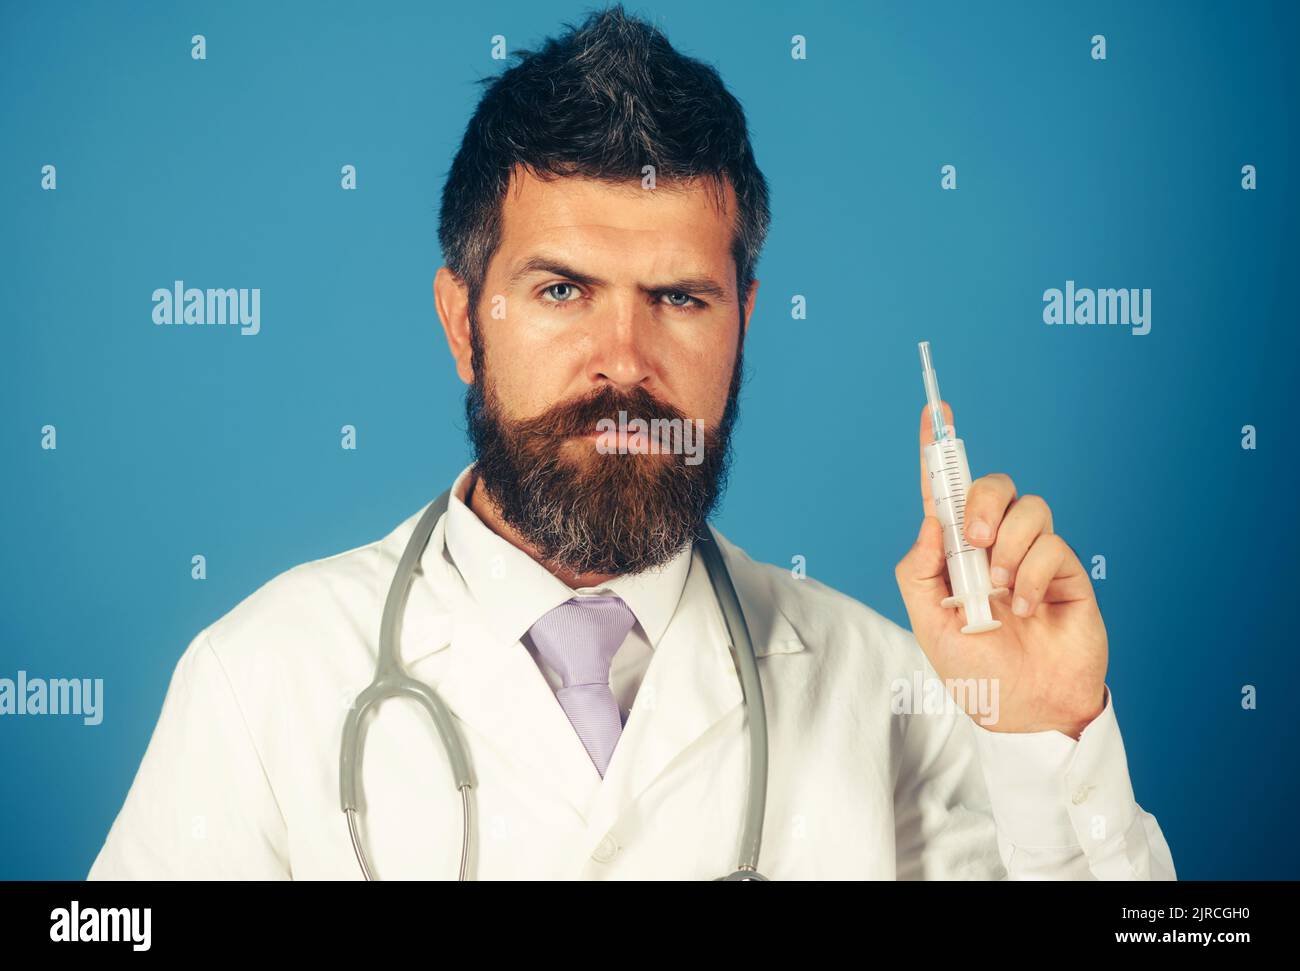 Medicina, vaccinazione e concetto di assistenza sanitaria - medico o scienziato di sesso maschile in uniforme con siringa. Foto Stock